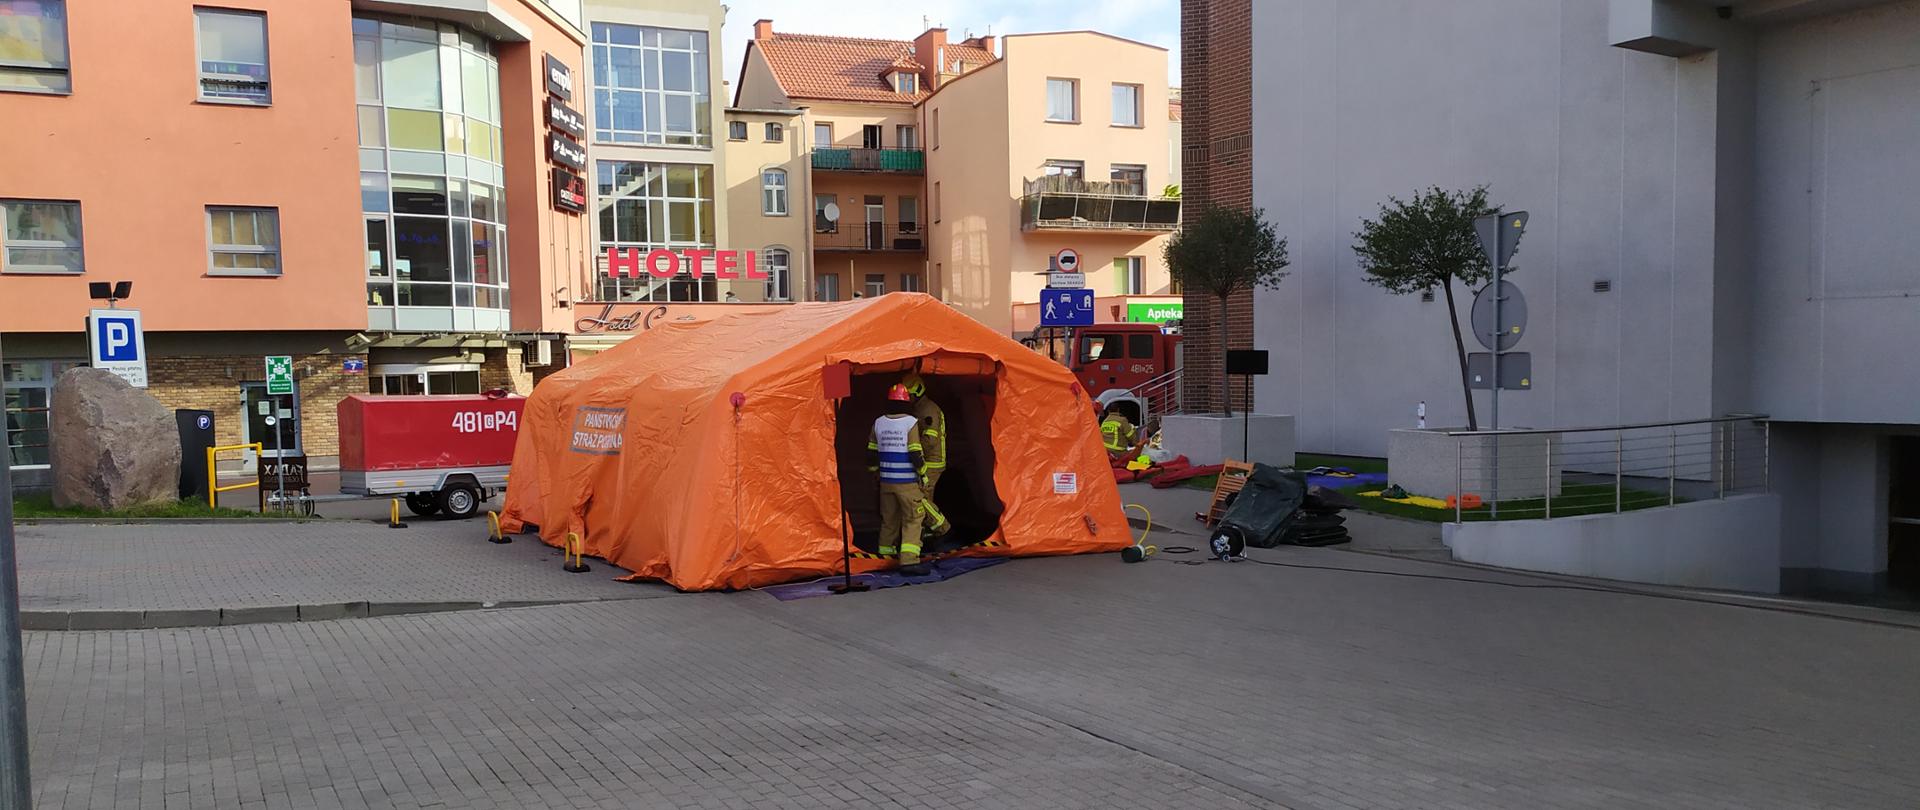 Fotografia przedstawia namiot strażacki w kolorze pomarańczowym stojący przed galerią handlową podczas ćwiczeń.